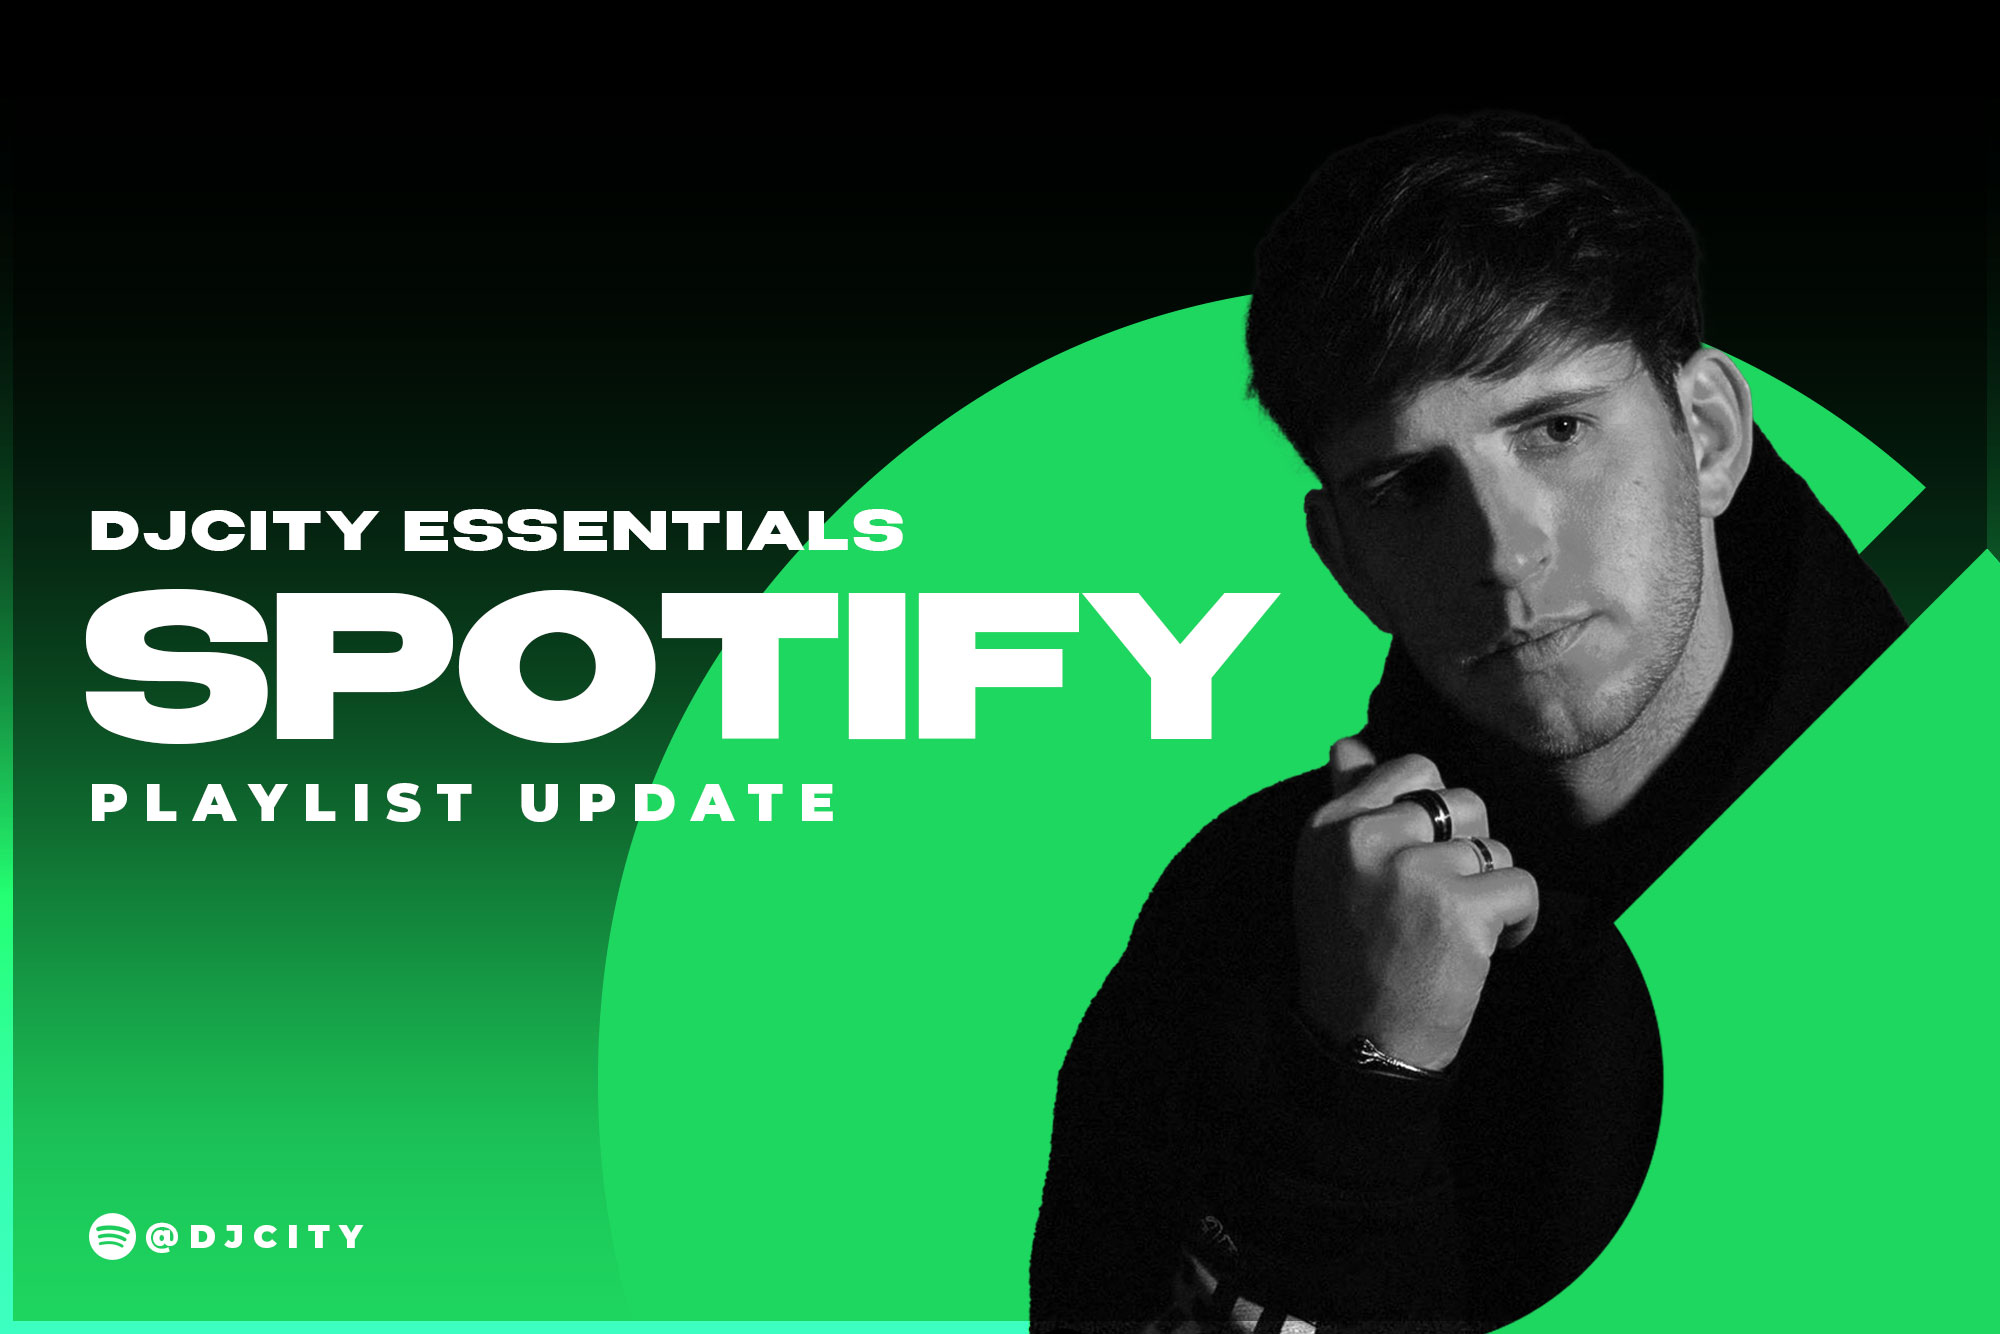 DJcity’s Spotify Playlist Update: Mar. 16